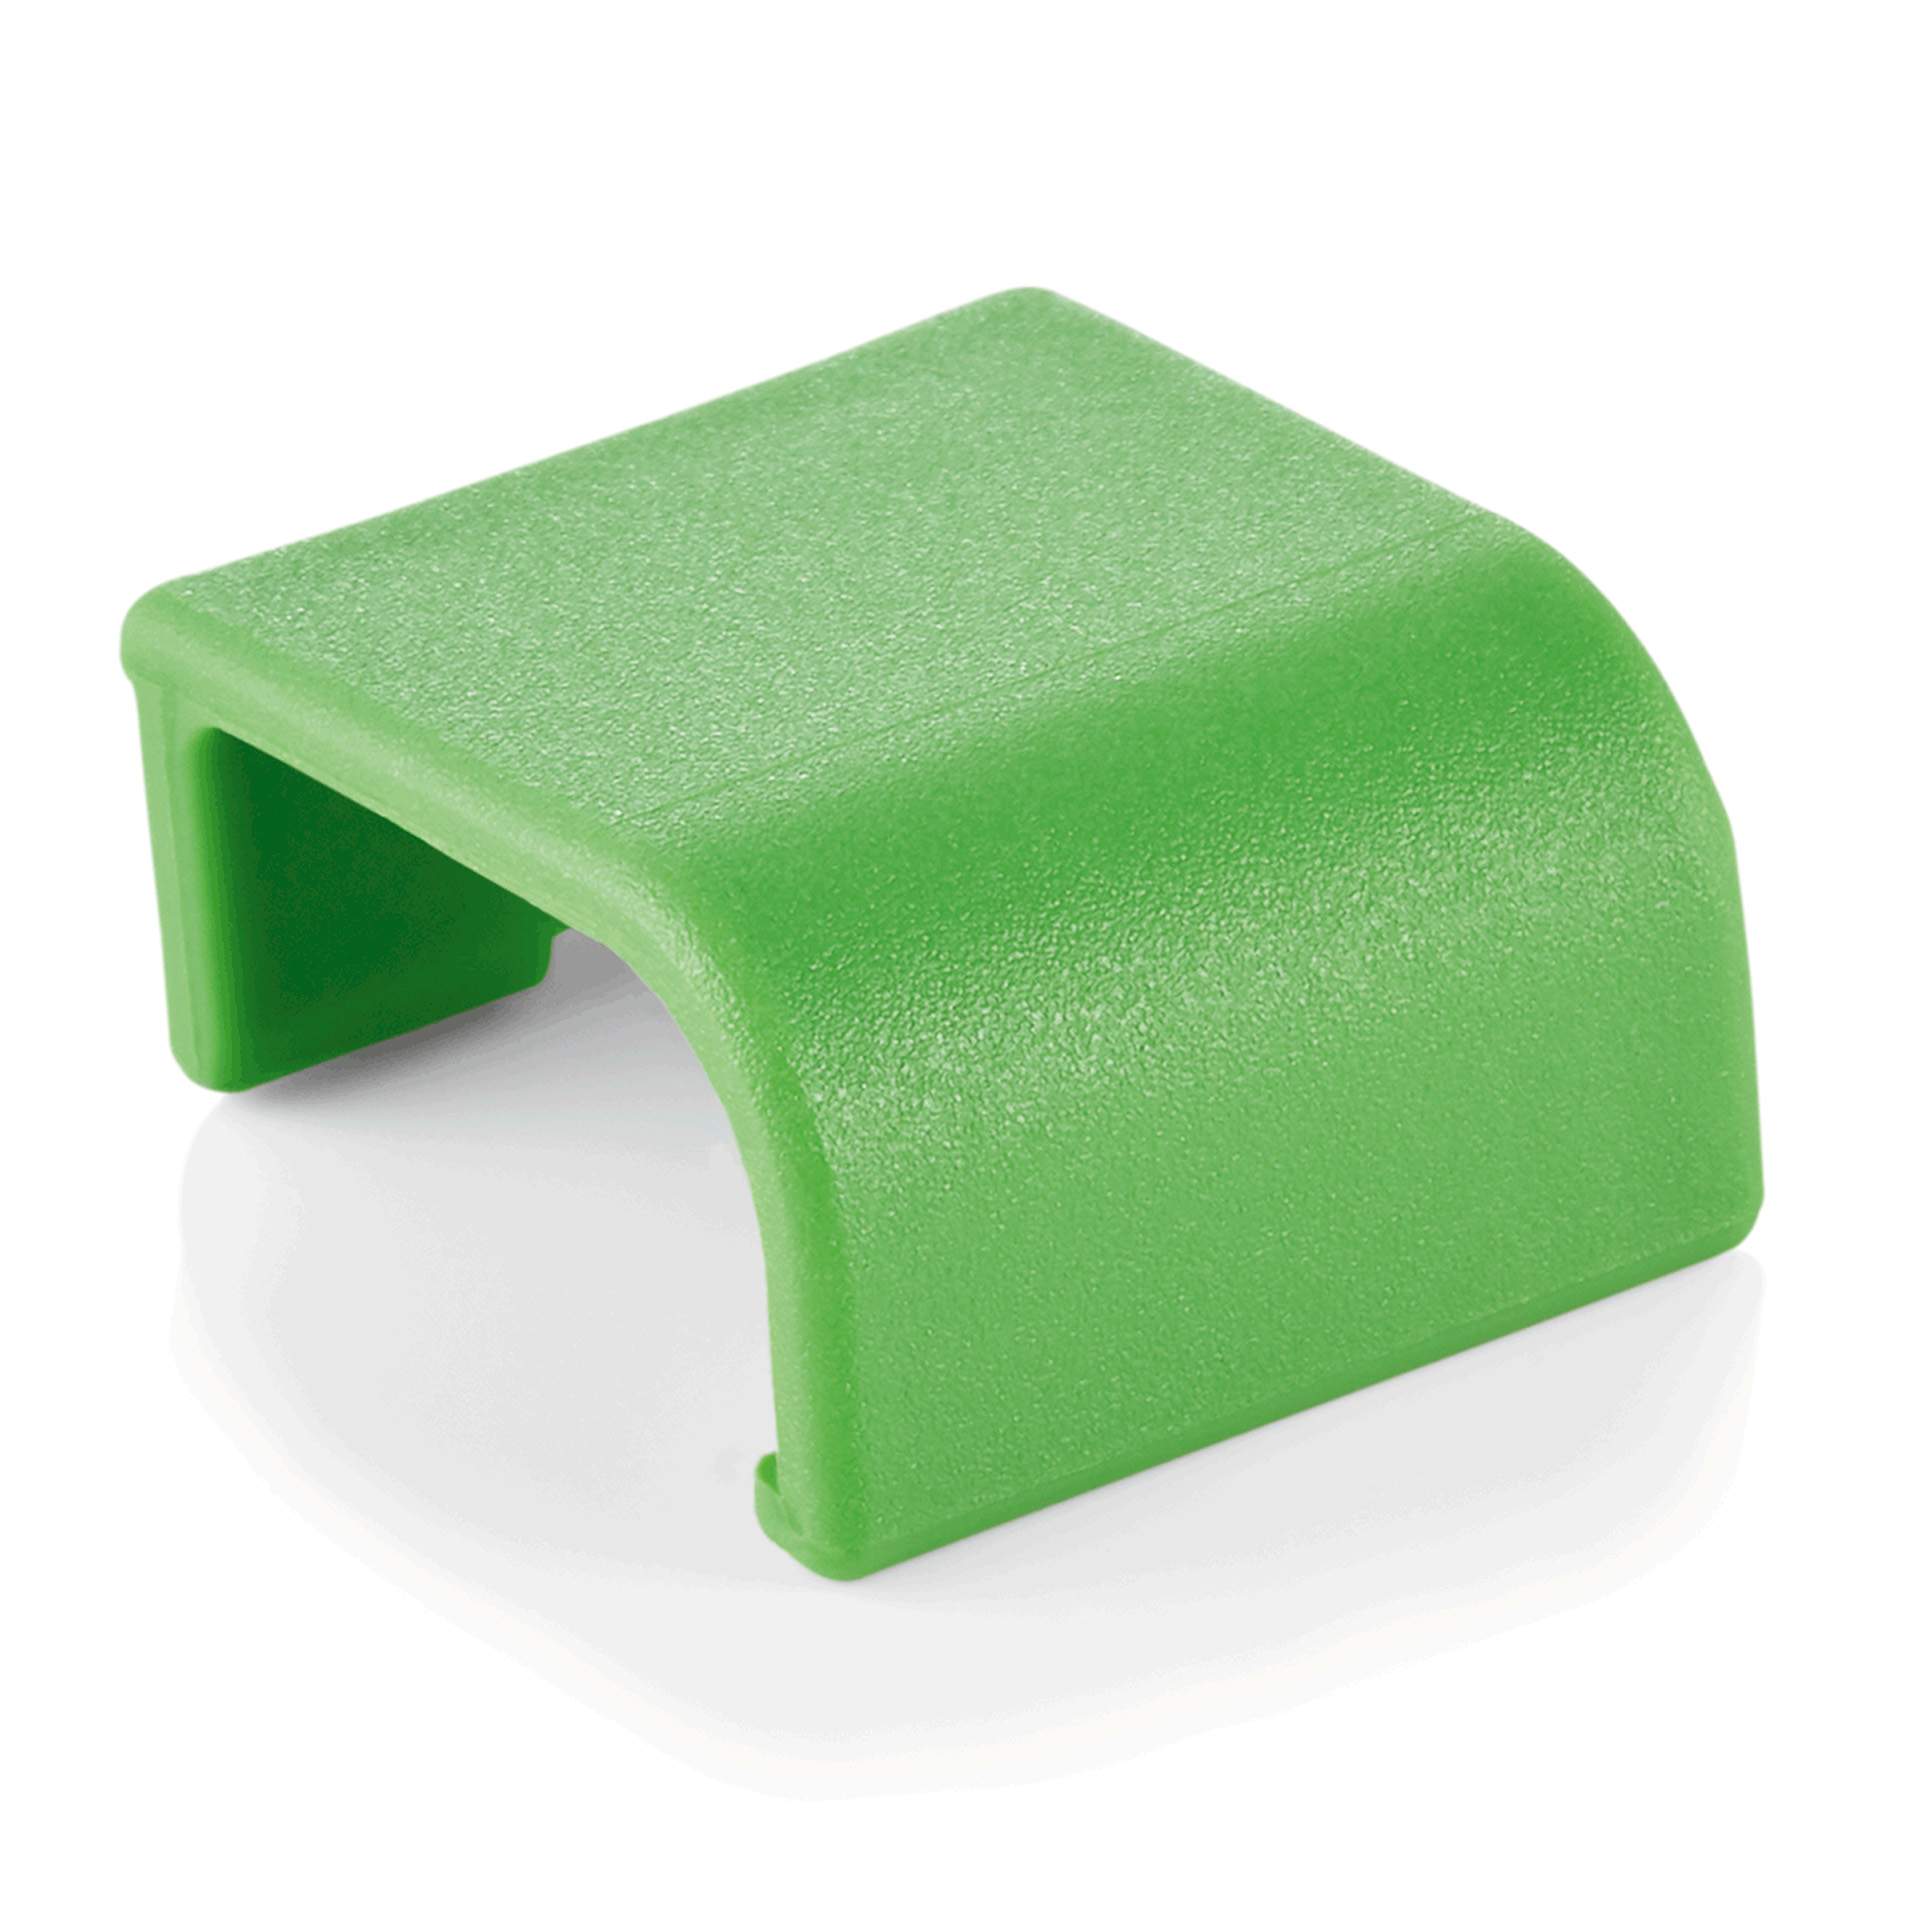 Markierungsclips - farbiger Markierungsclip - Serie 84 - grün - Kunststoff - 8707004-A